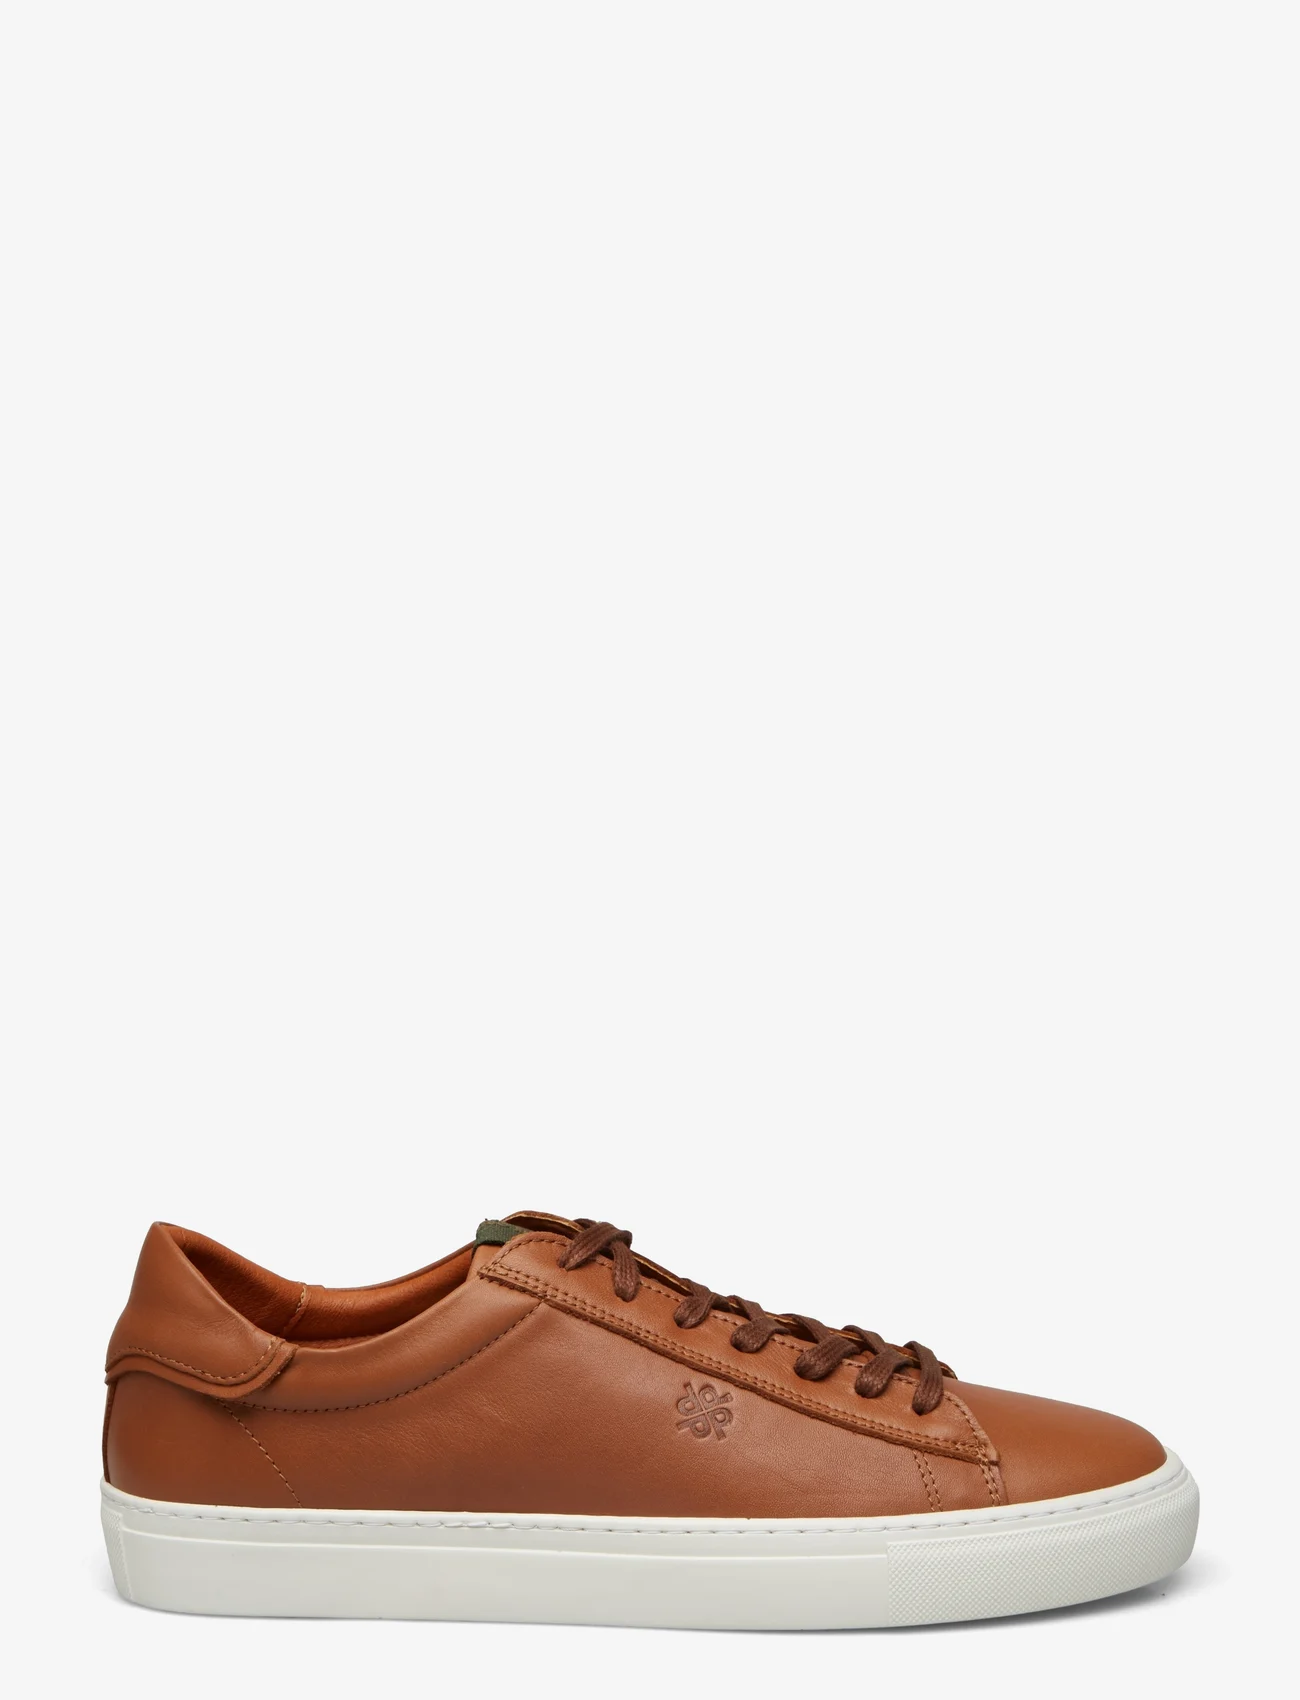 Playboy Footwear - Henri - låga sneakers - brown leather - 1